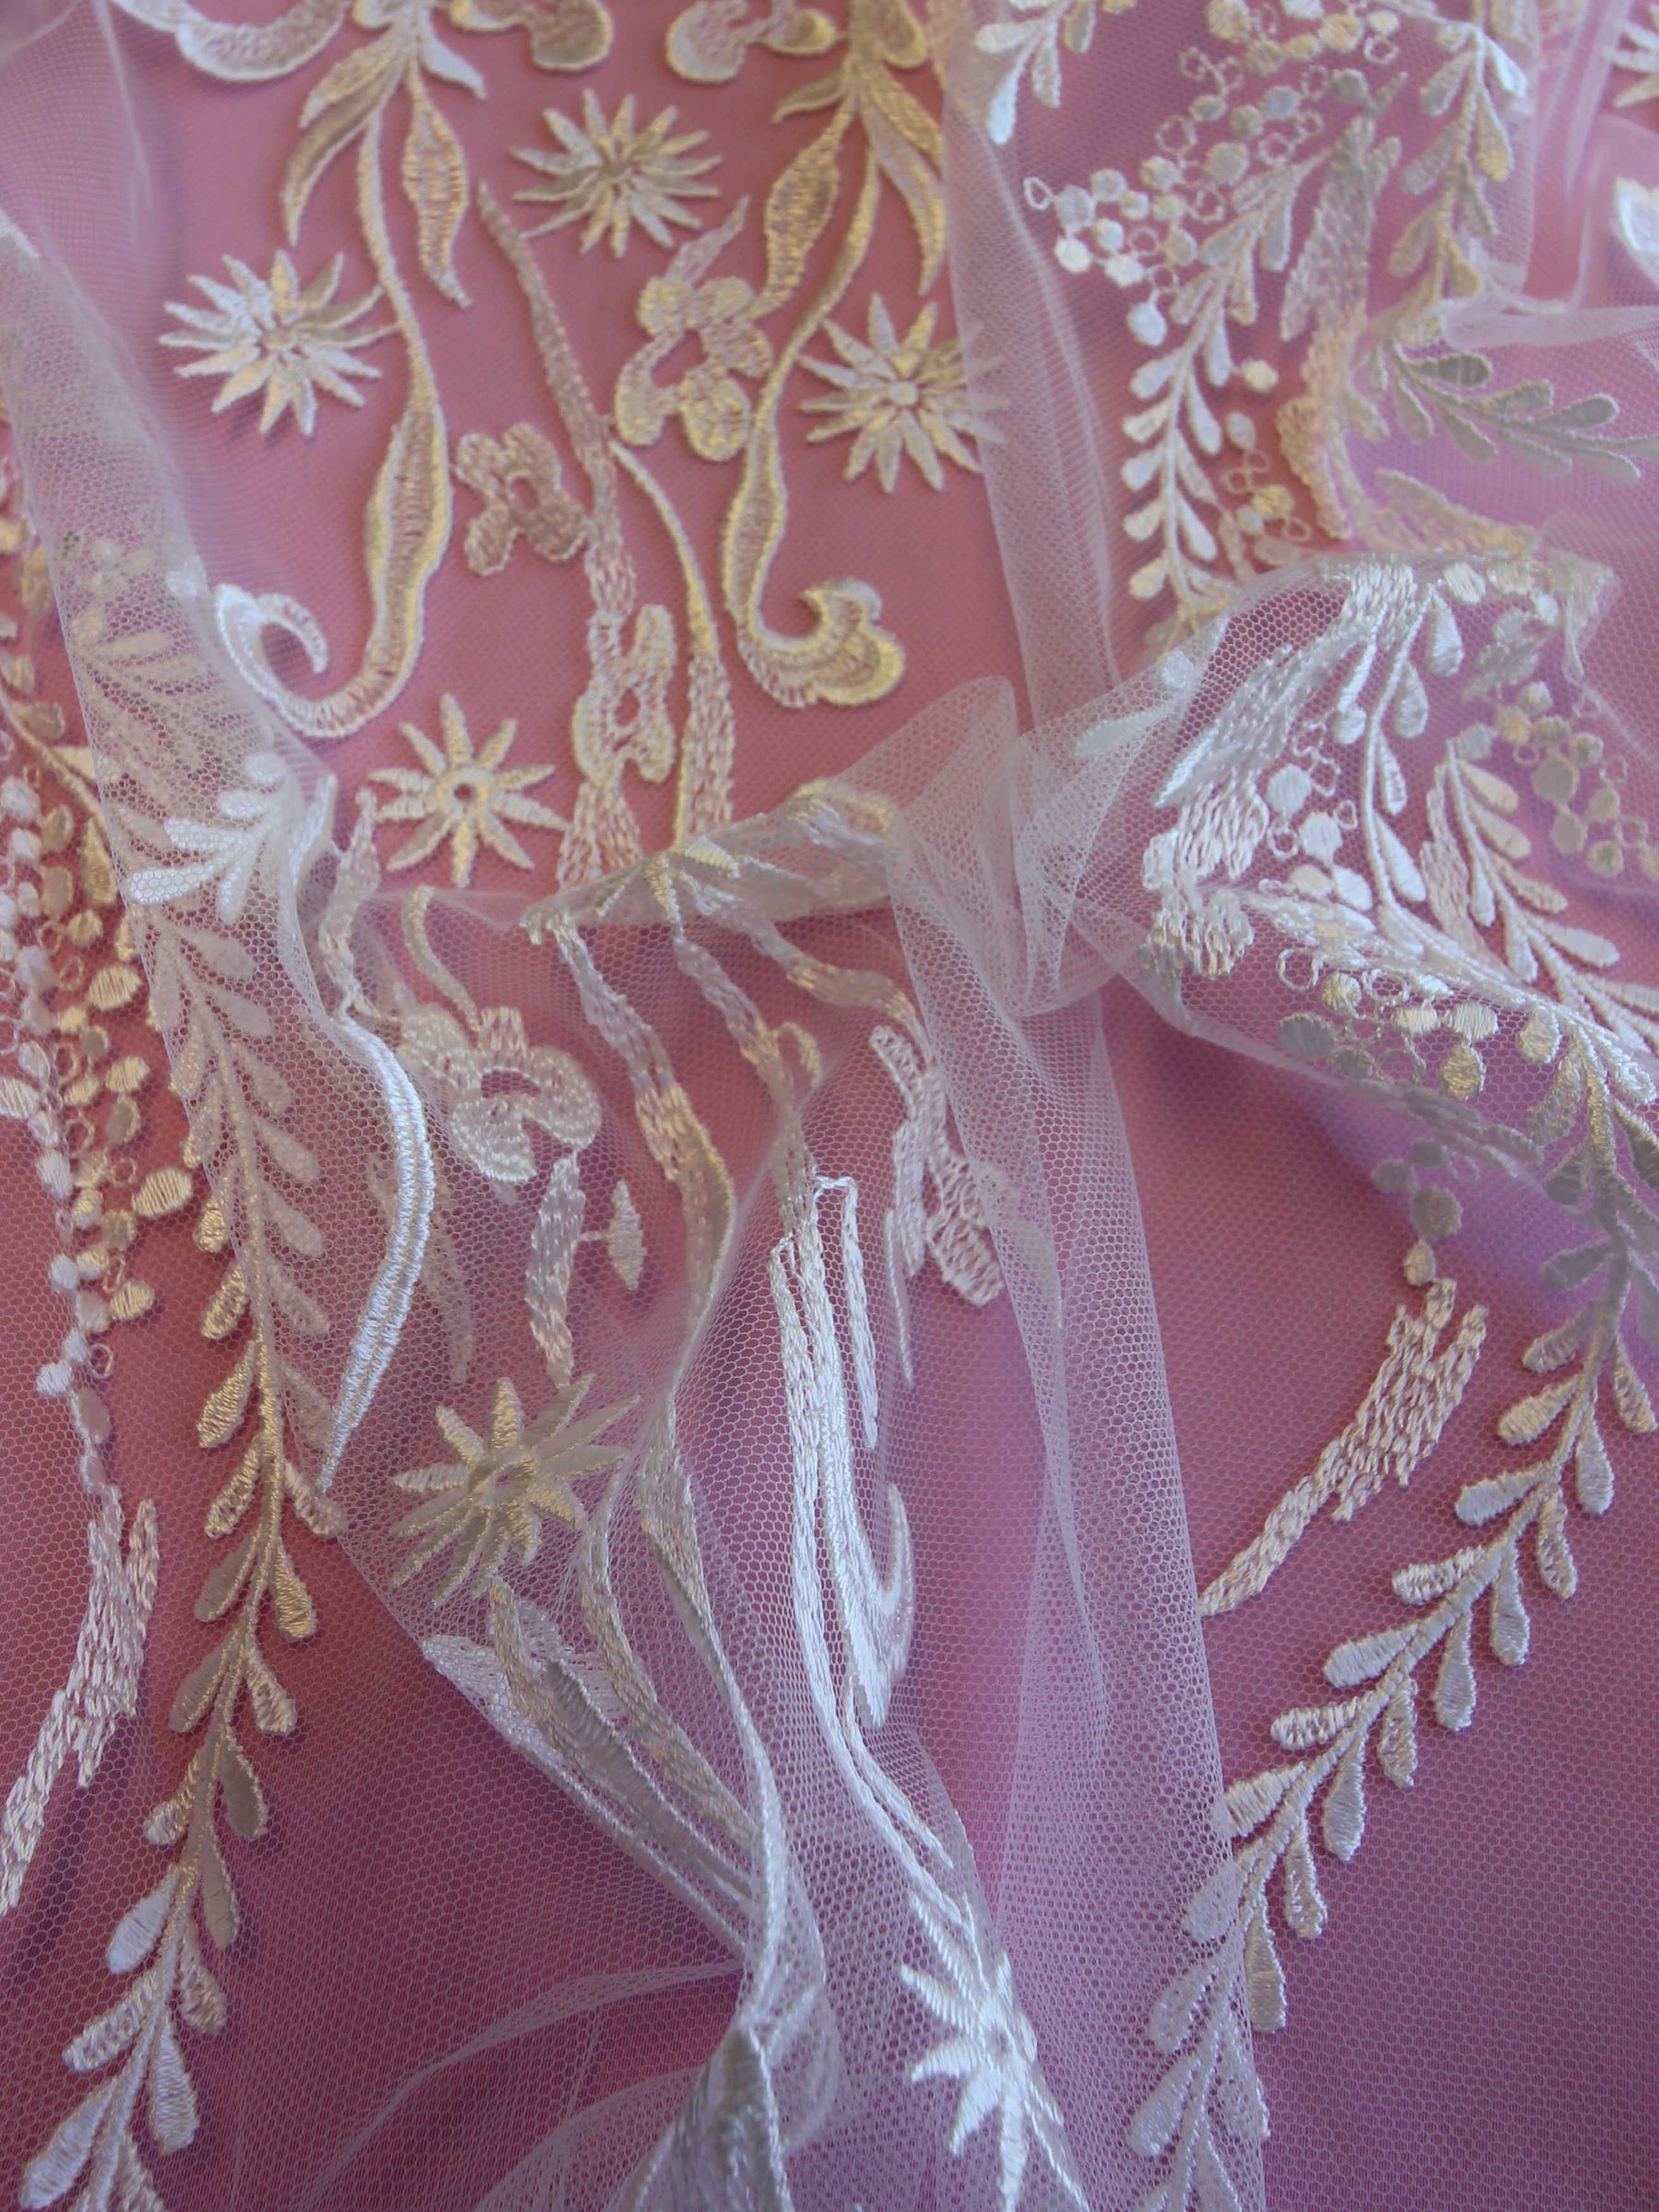 Ivory Embroidered Lace - Floriseta